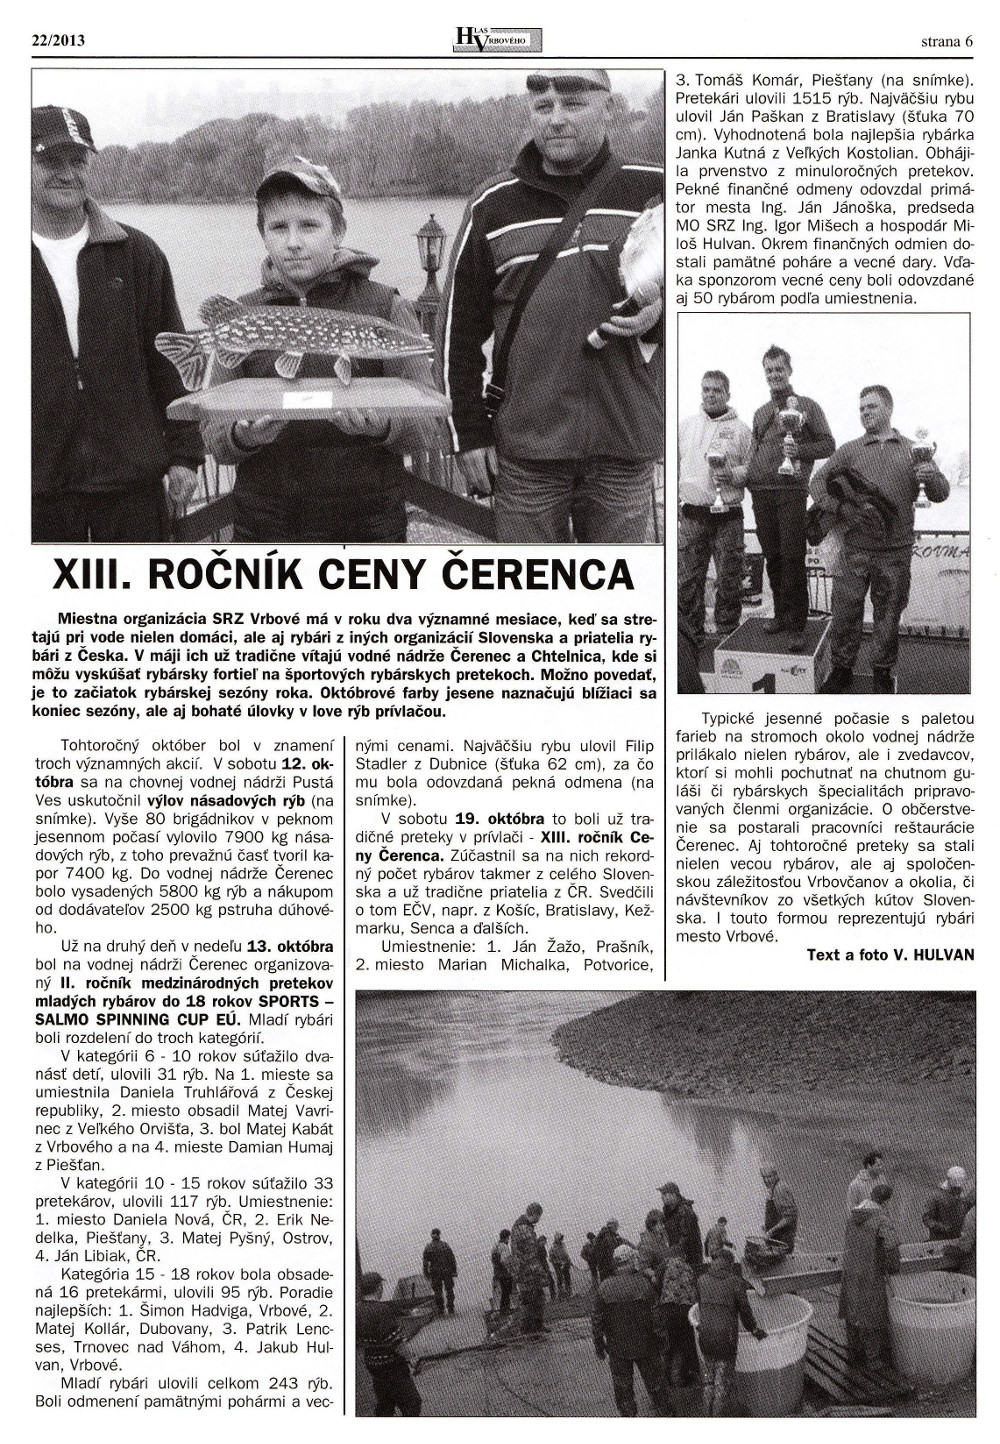 Hlas Vrbového 22/2013, strana 6